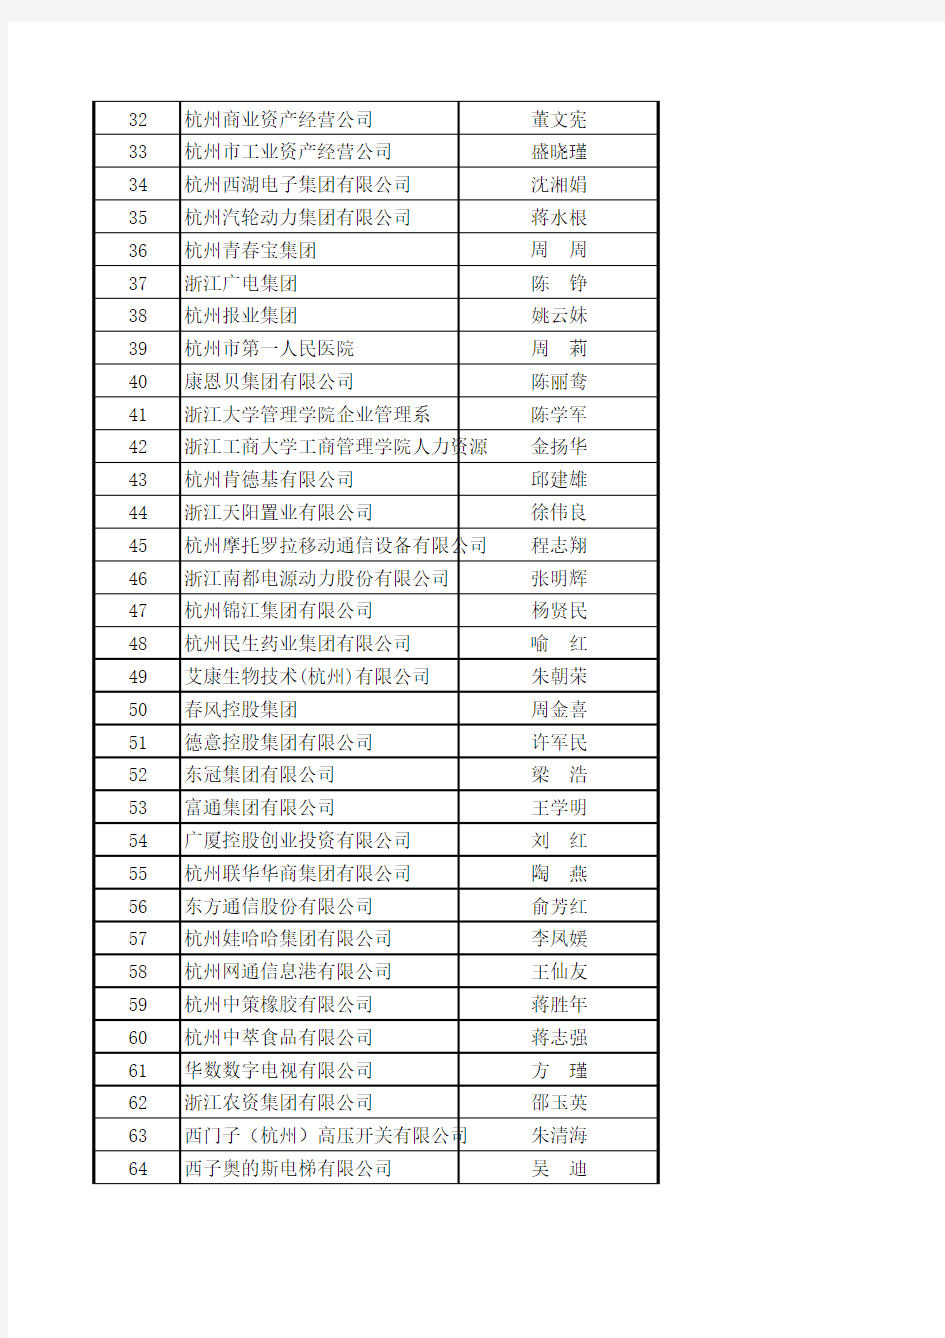 杭州知名企业HR名单